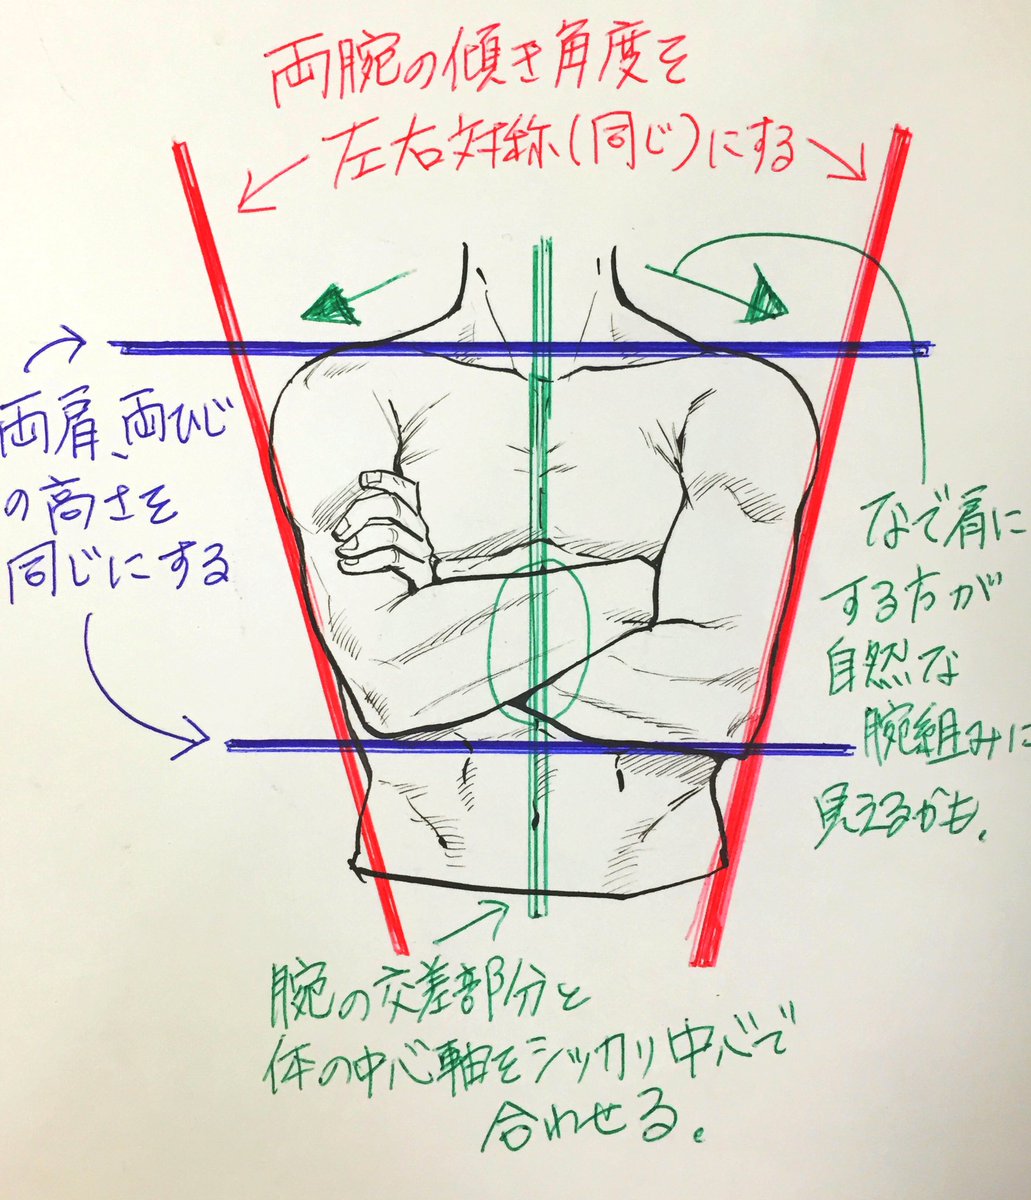 Uzivatel 吉村拓也 イラスト講座 Na Twitteru 腕組みはこの3点で綺麗に描ける 腕組みポーズ 動画の プチ解説イラストです